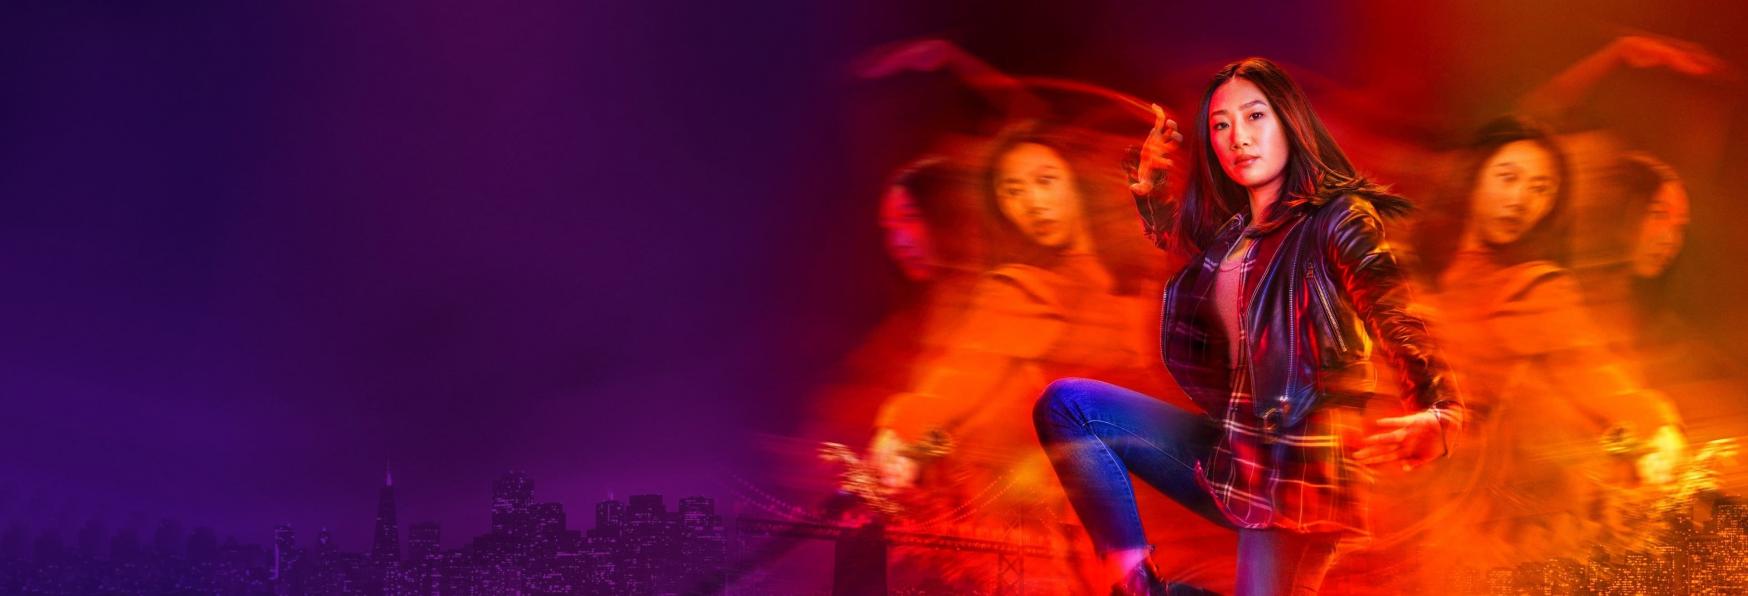 Kung Fu 4 non ci sarà! The CW Cancella la Serie TV Reboot